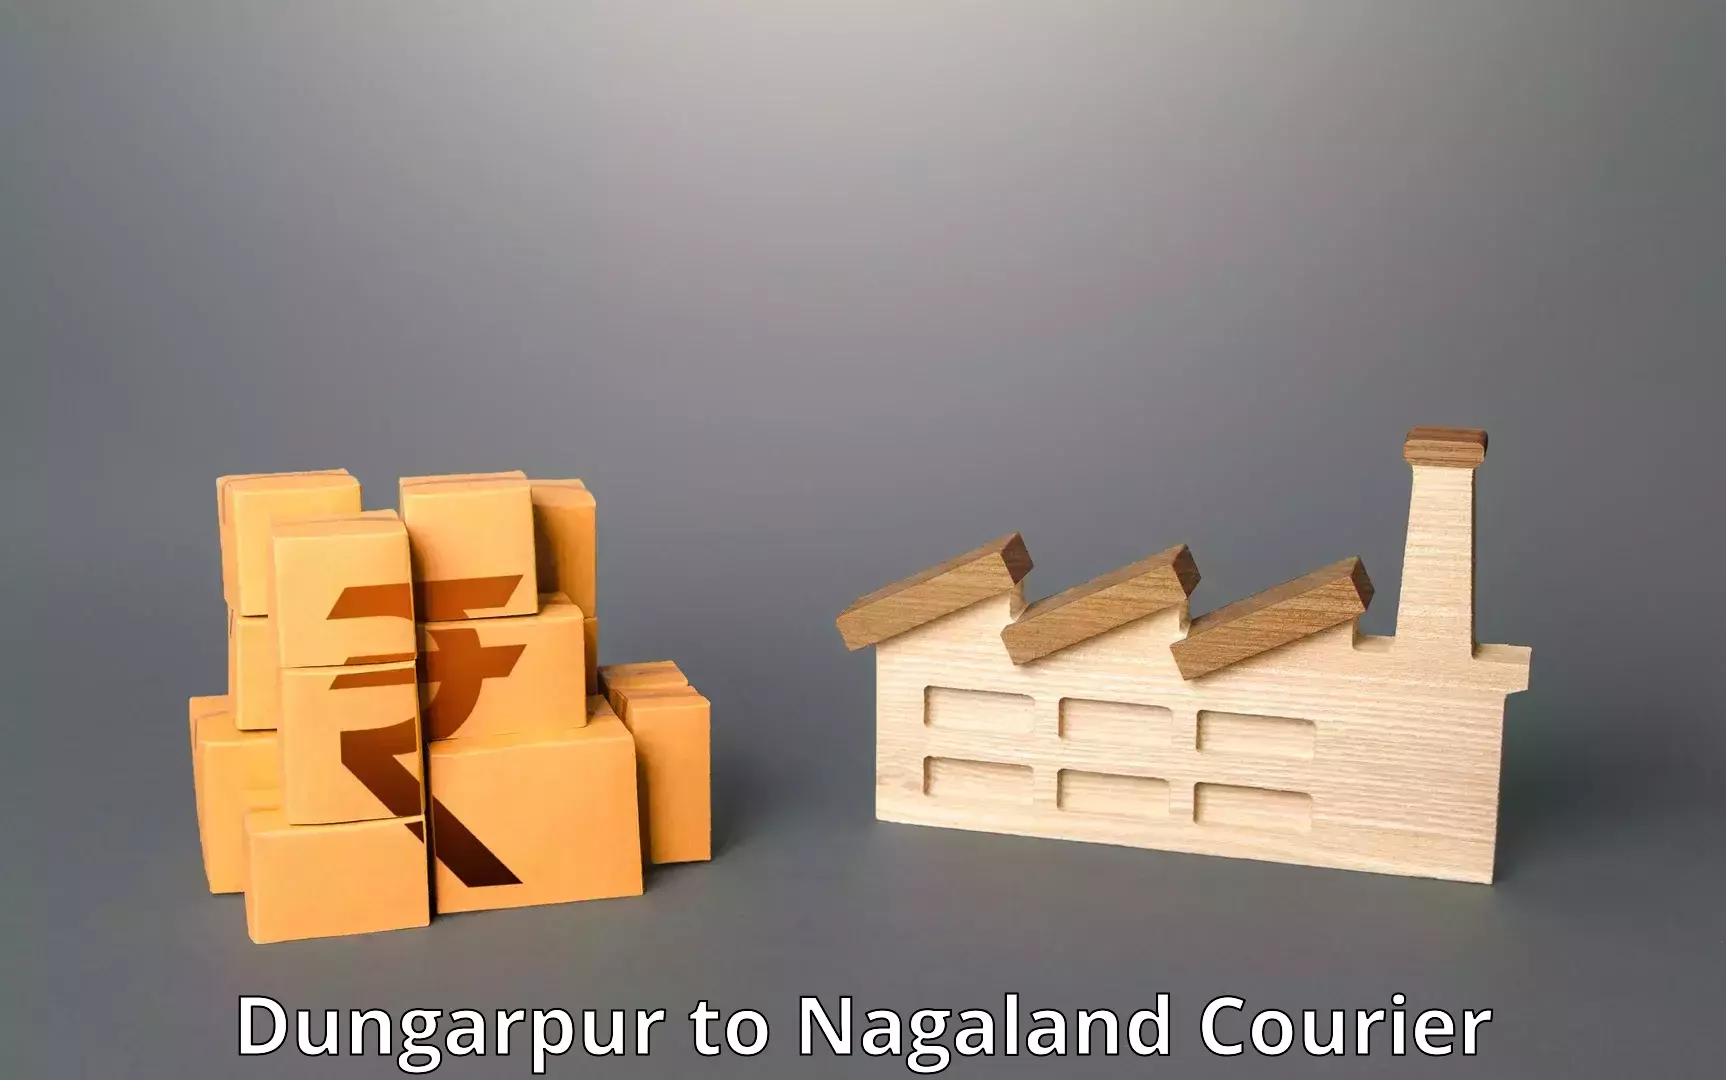 Express mail service Dungarpur to Nagaland